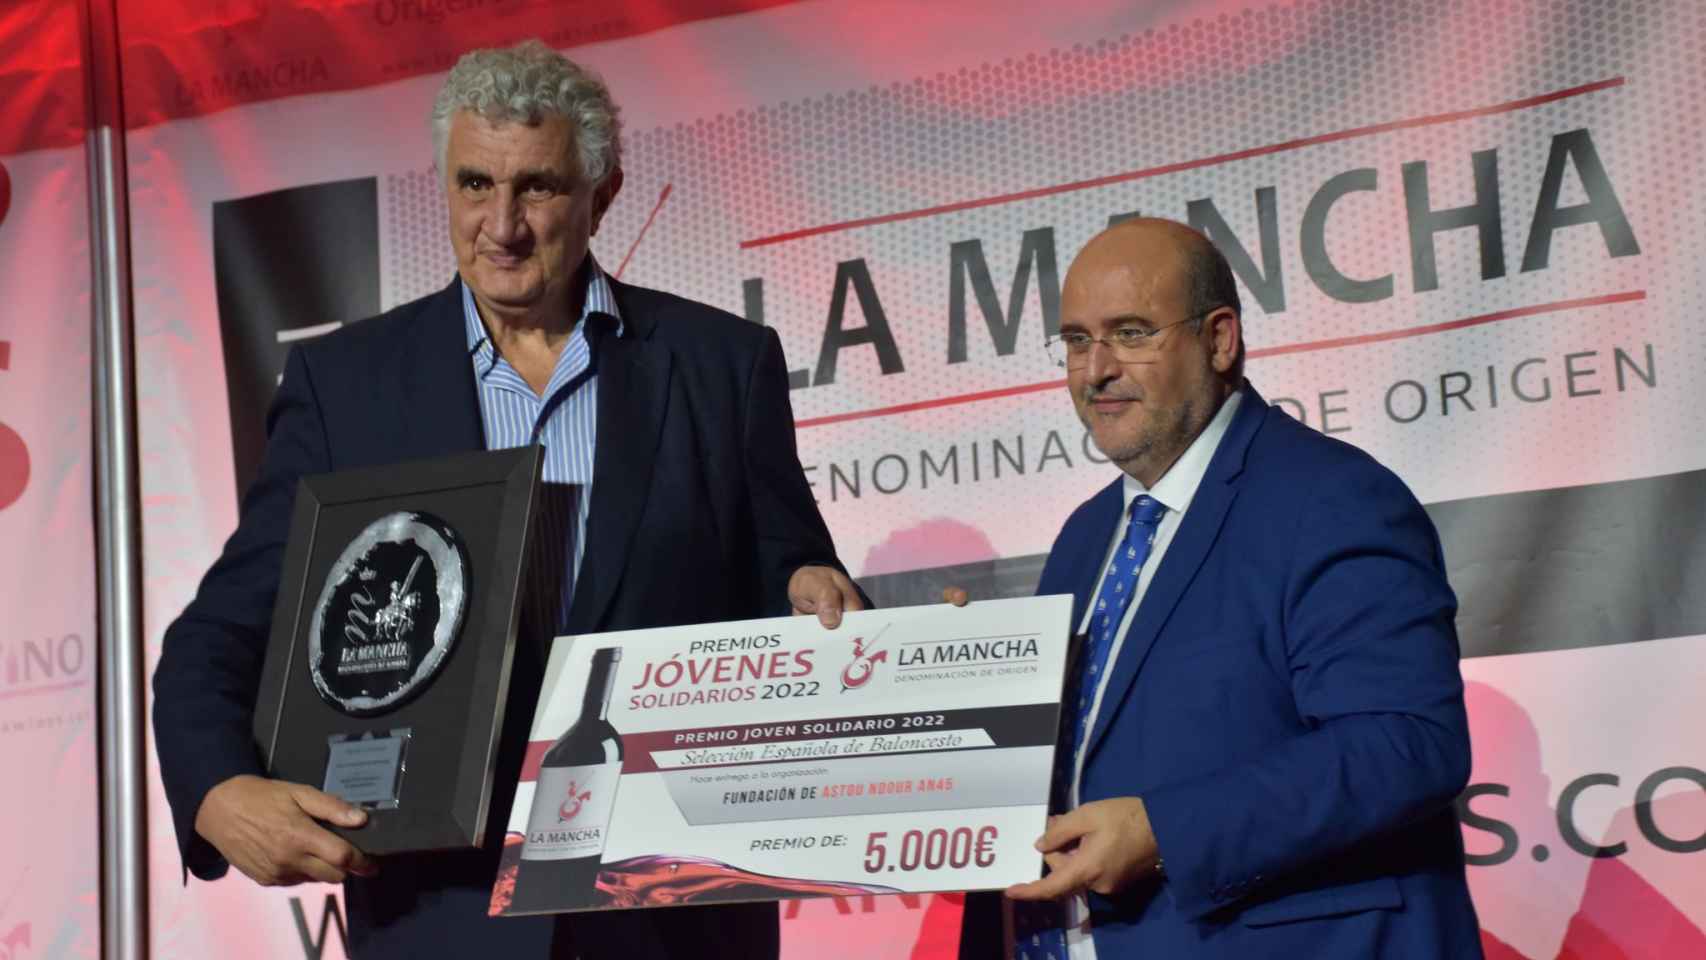 Gala de altura de la DO La Mancha con sus premios solidarios